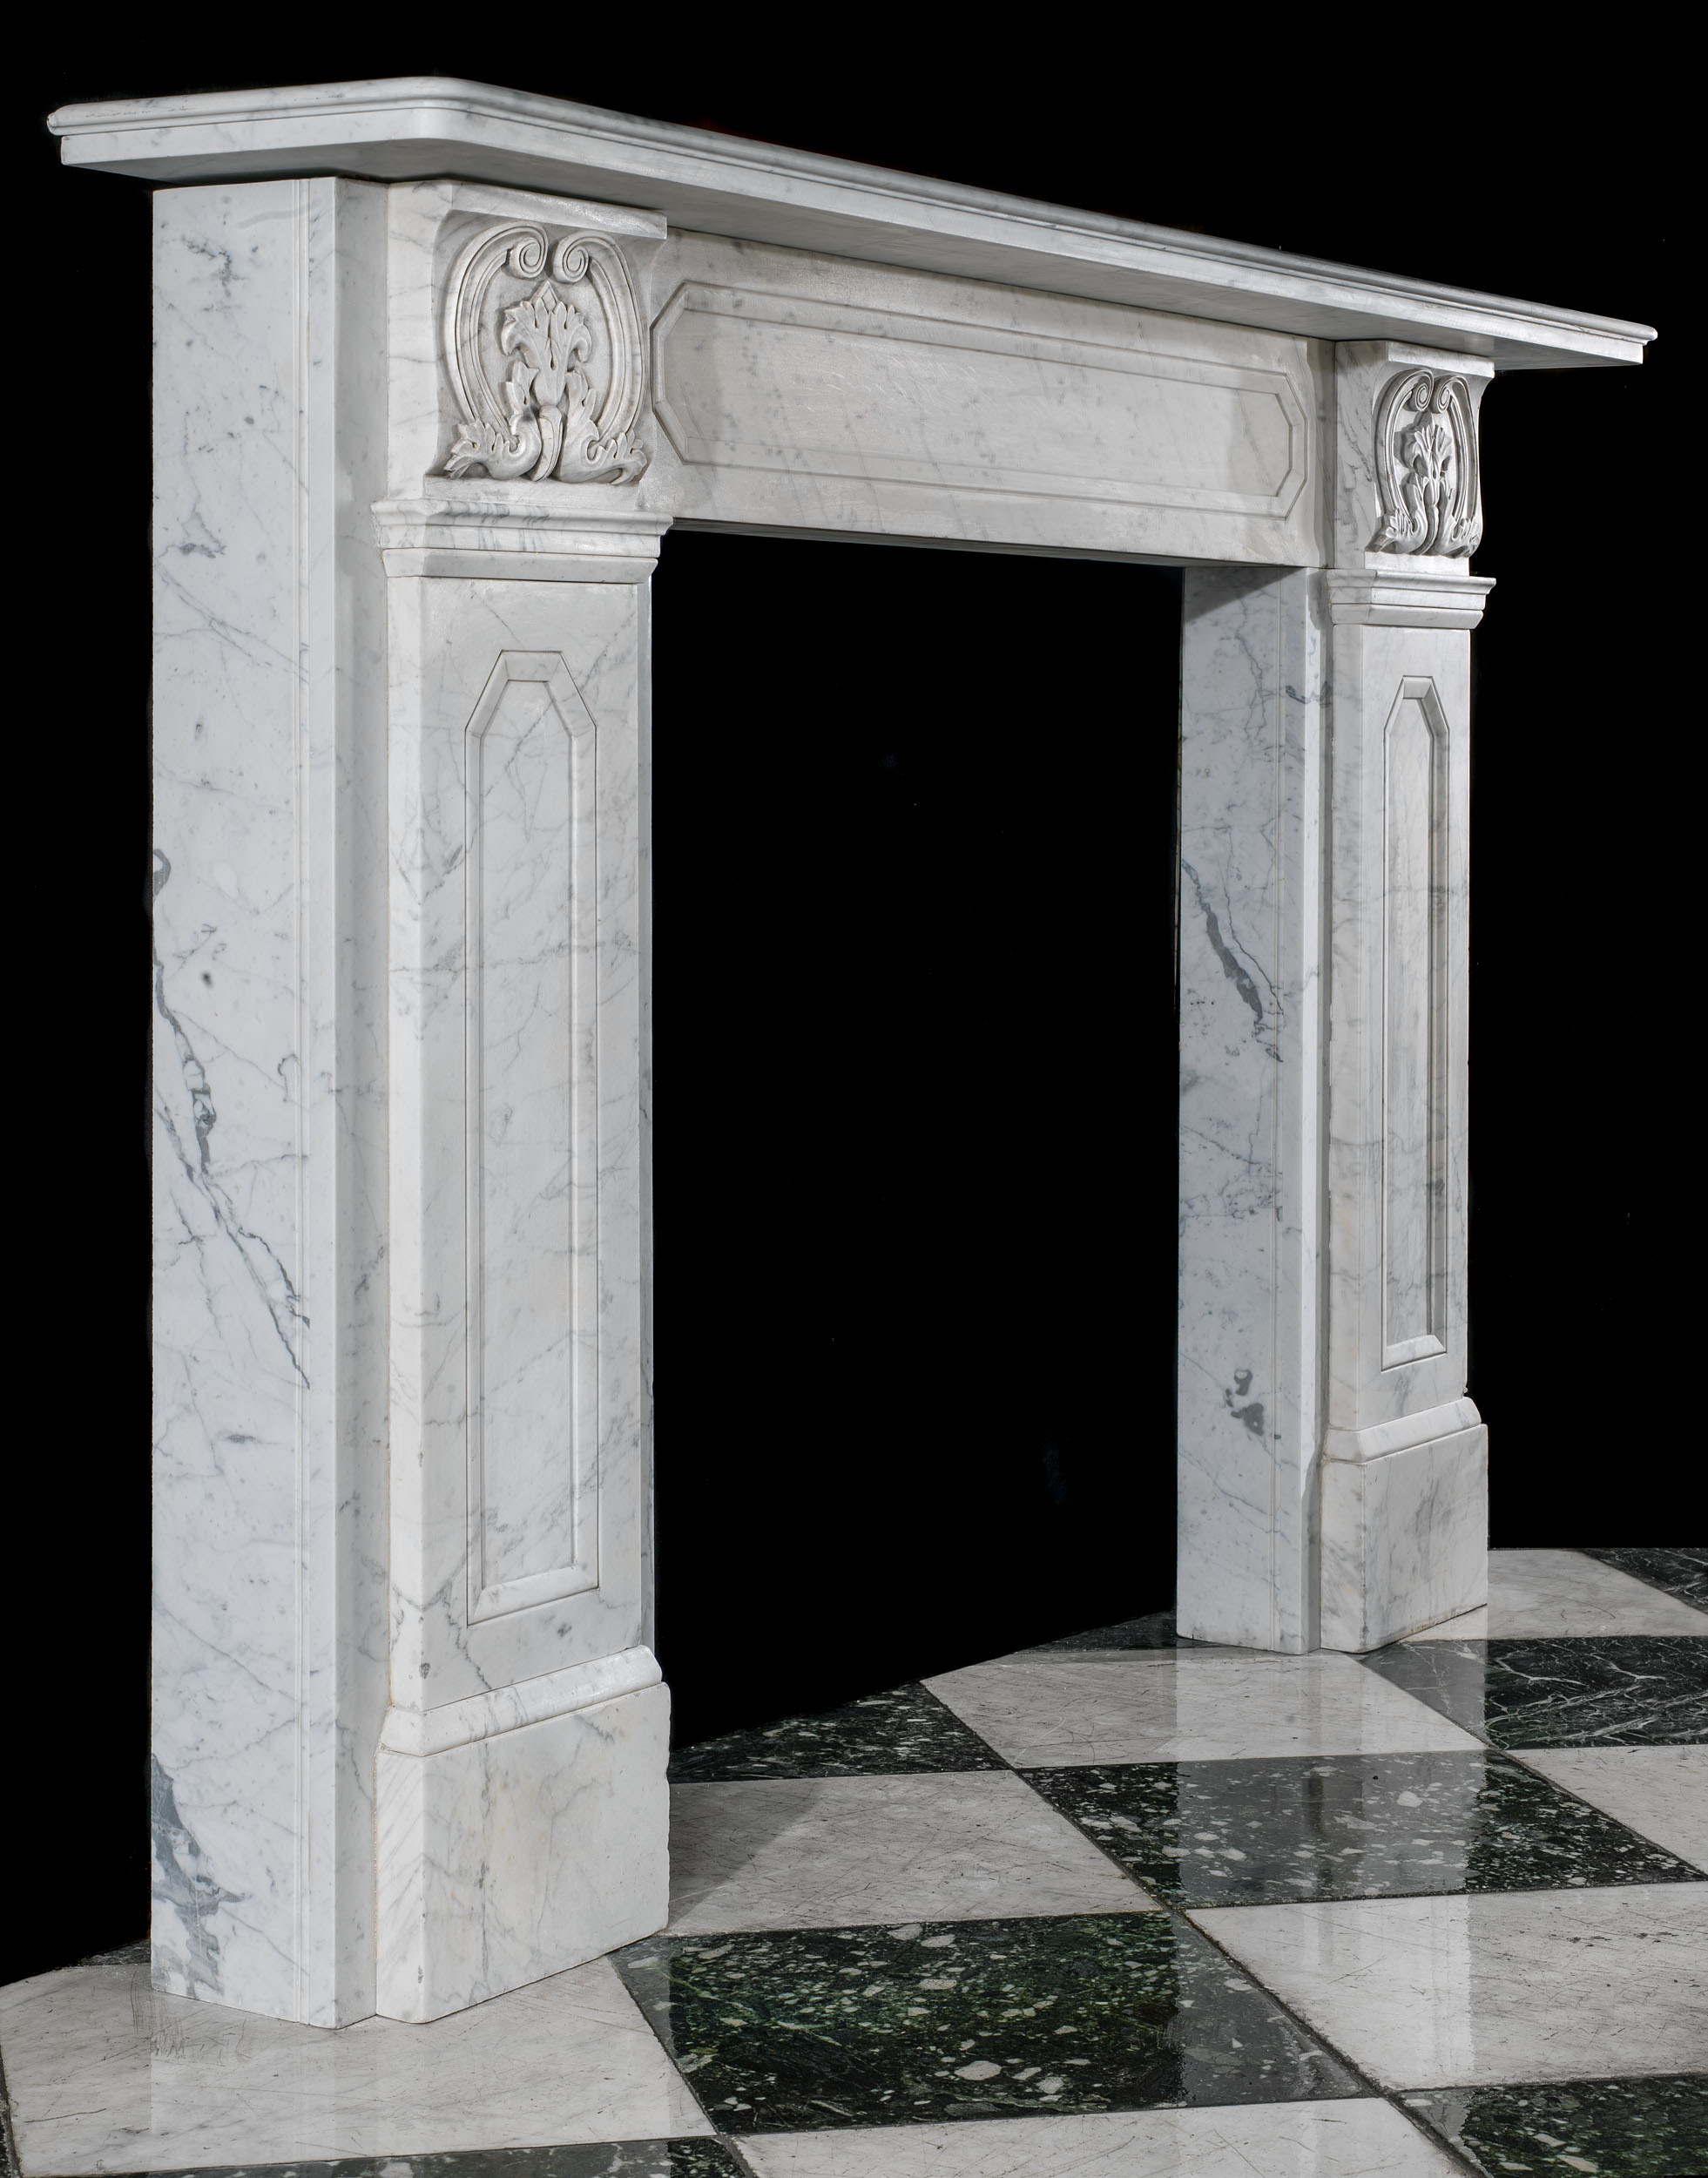 A Regency Fireplace in Veined Carrara Marble